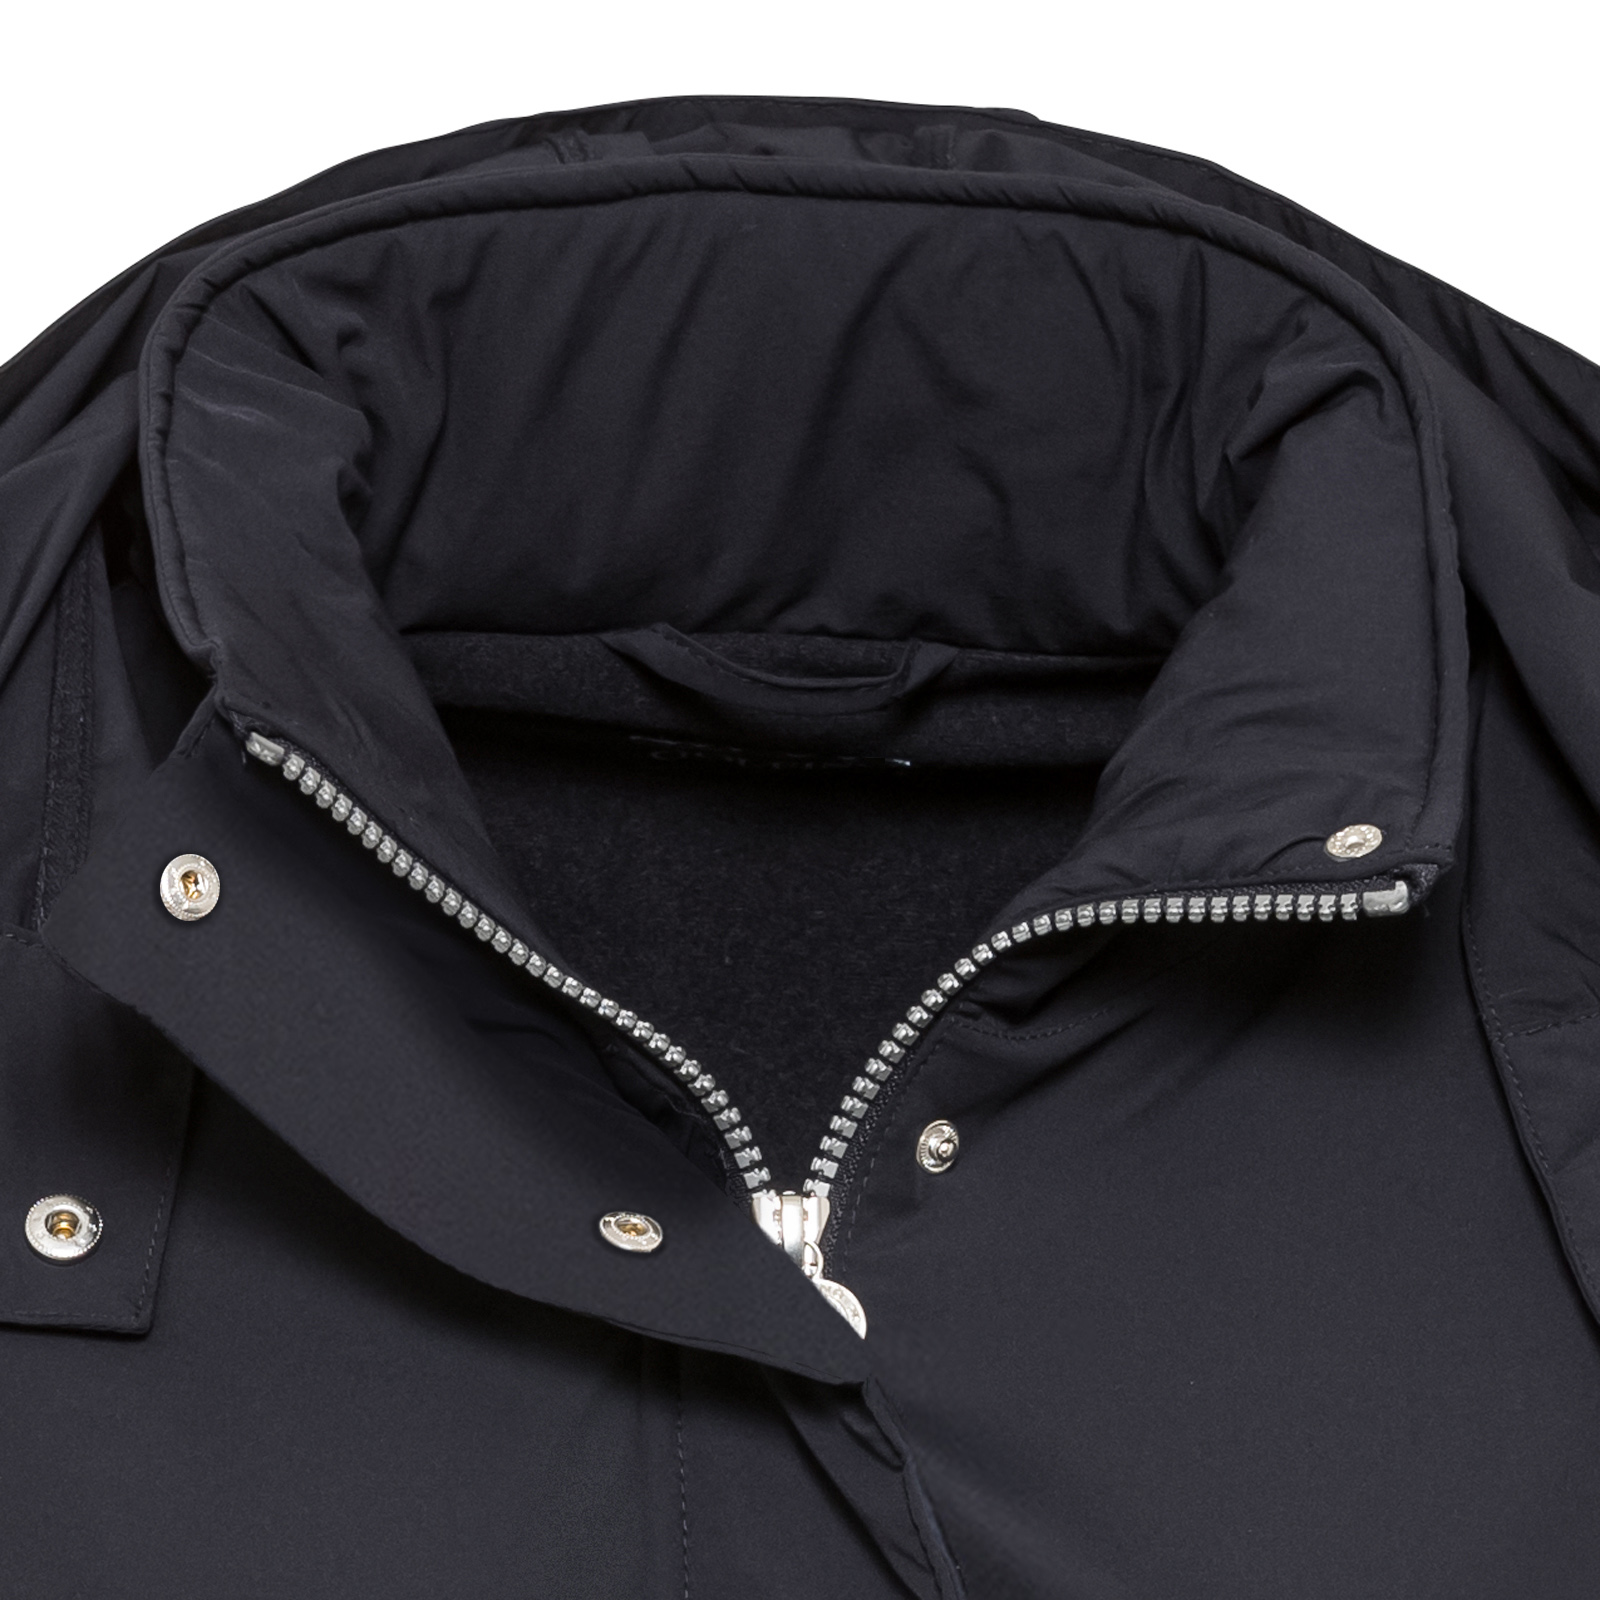 Leichte Damen Golf Jacke mit Kälteschutz in elastischer Qualität